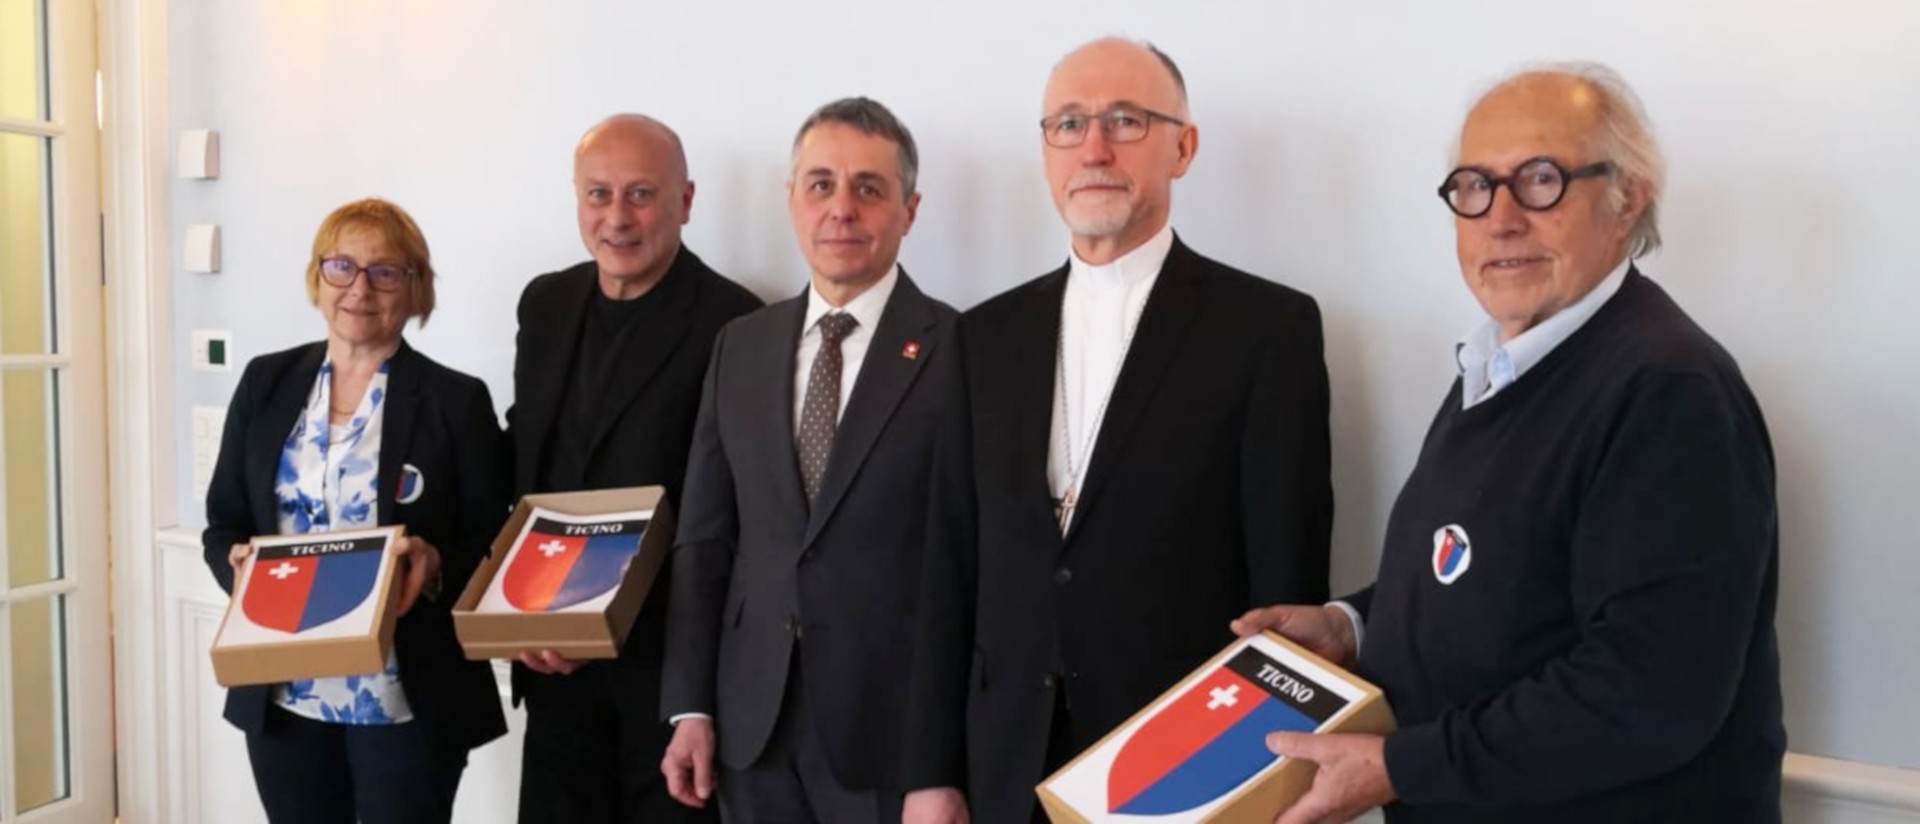 da sinistra a destra: Maddalena Ermotti Lepori, Luigi Maffezzoli, il consigliere federale Ignazio Cassis, il nunzio Krebs e Carlo Seitz